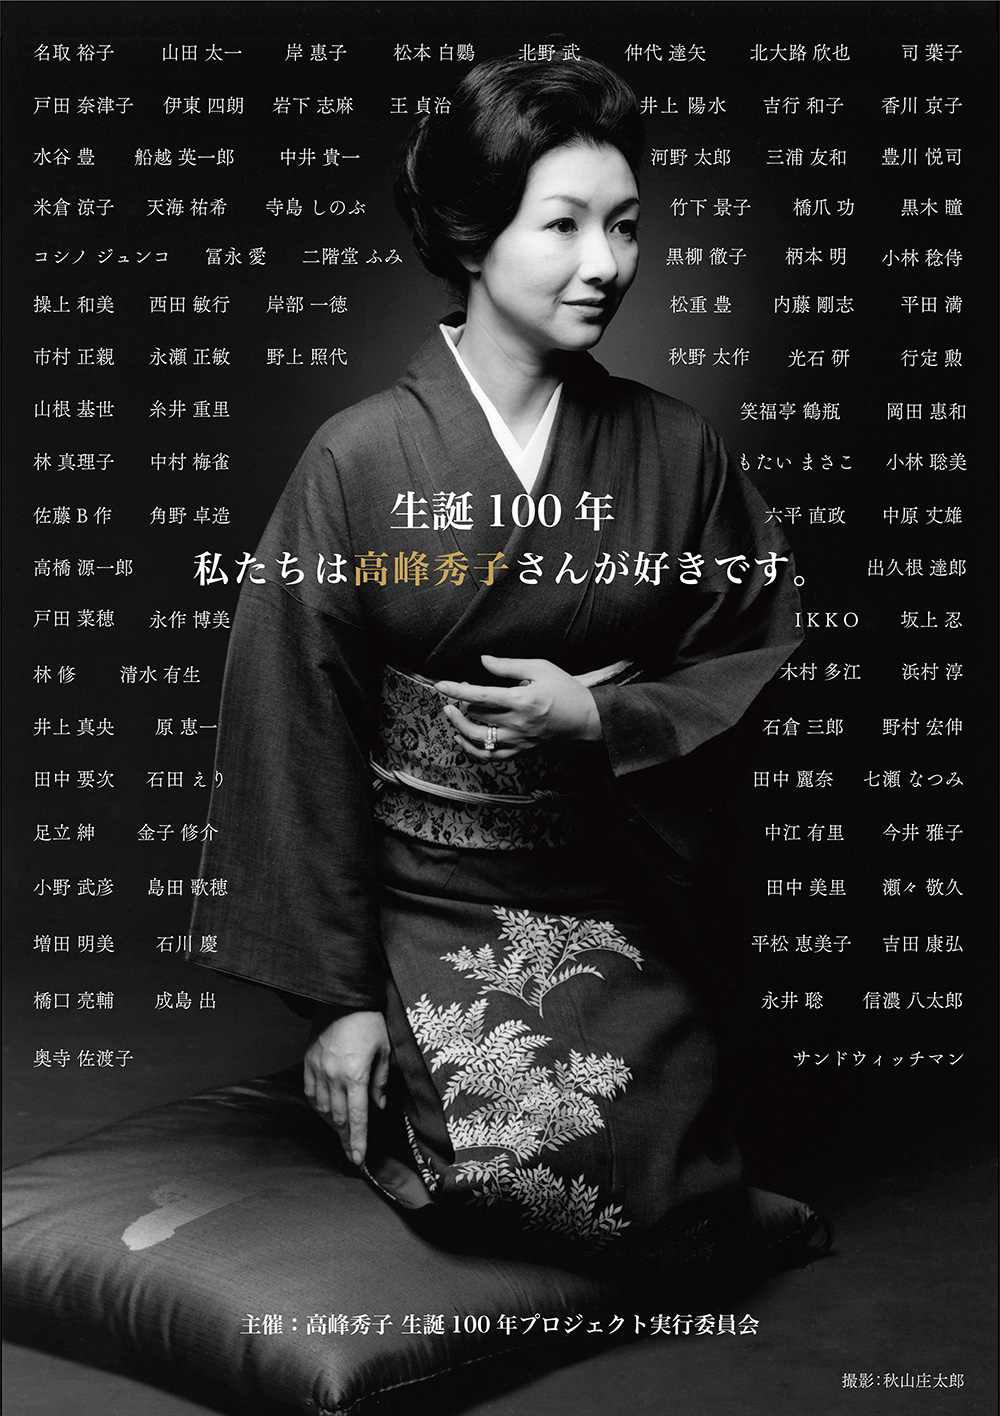 「高峰秀子生誕100年プロジェクト」公式サイト